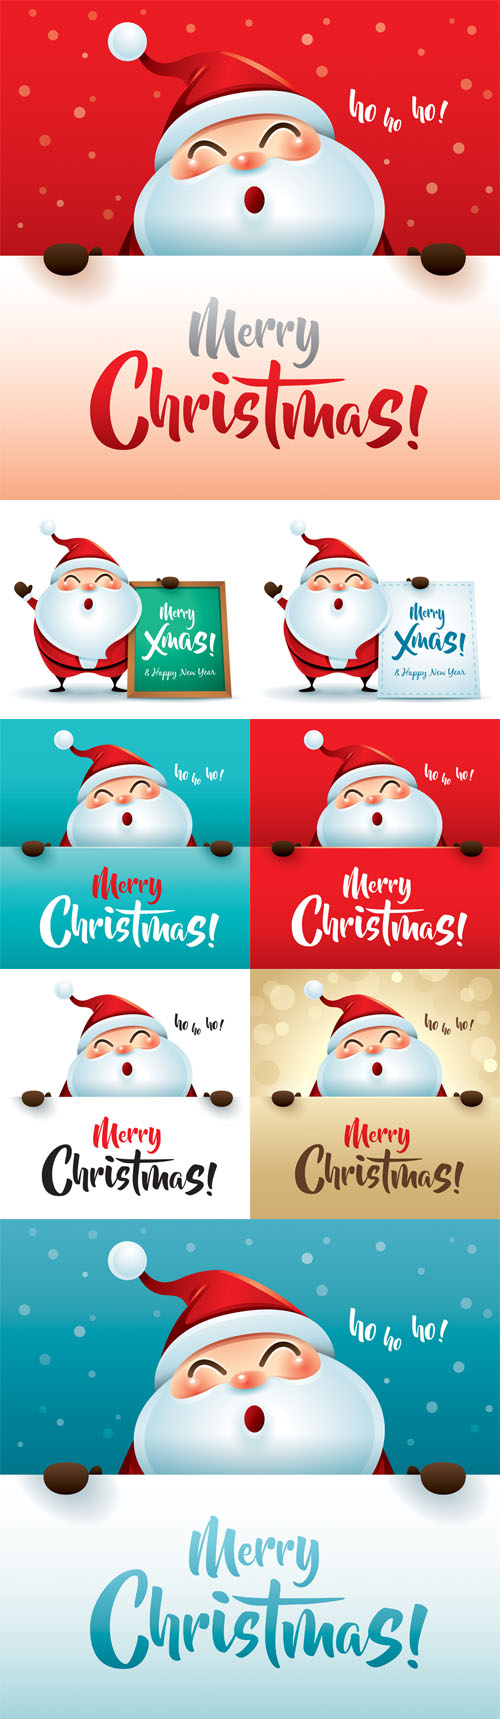 Vectors - Santa Claus with Message Board